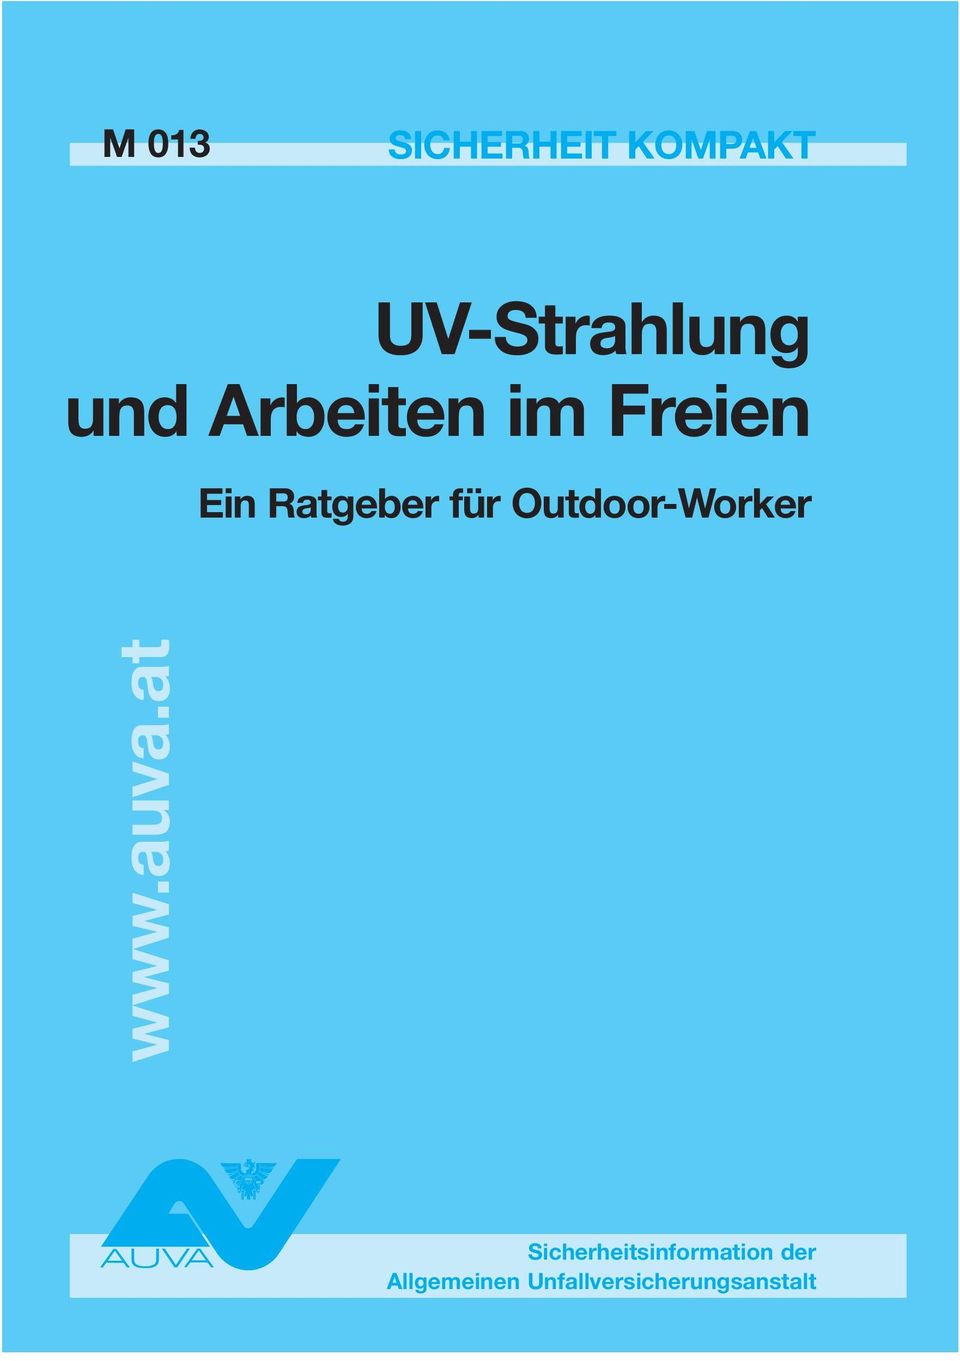 Outdoor-Worker www.auva.